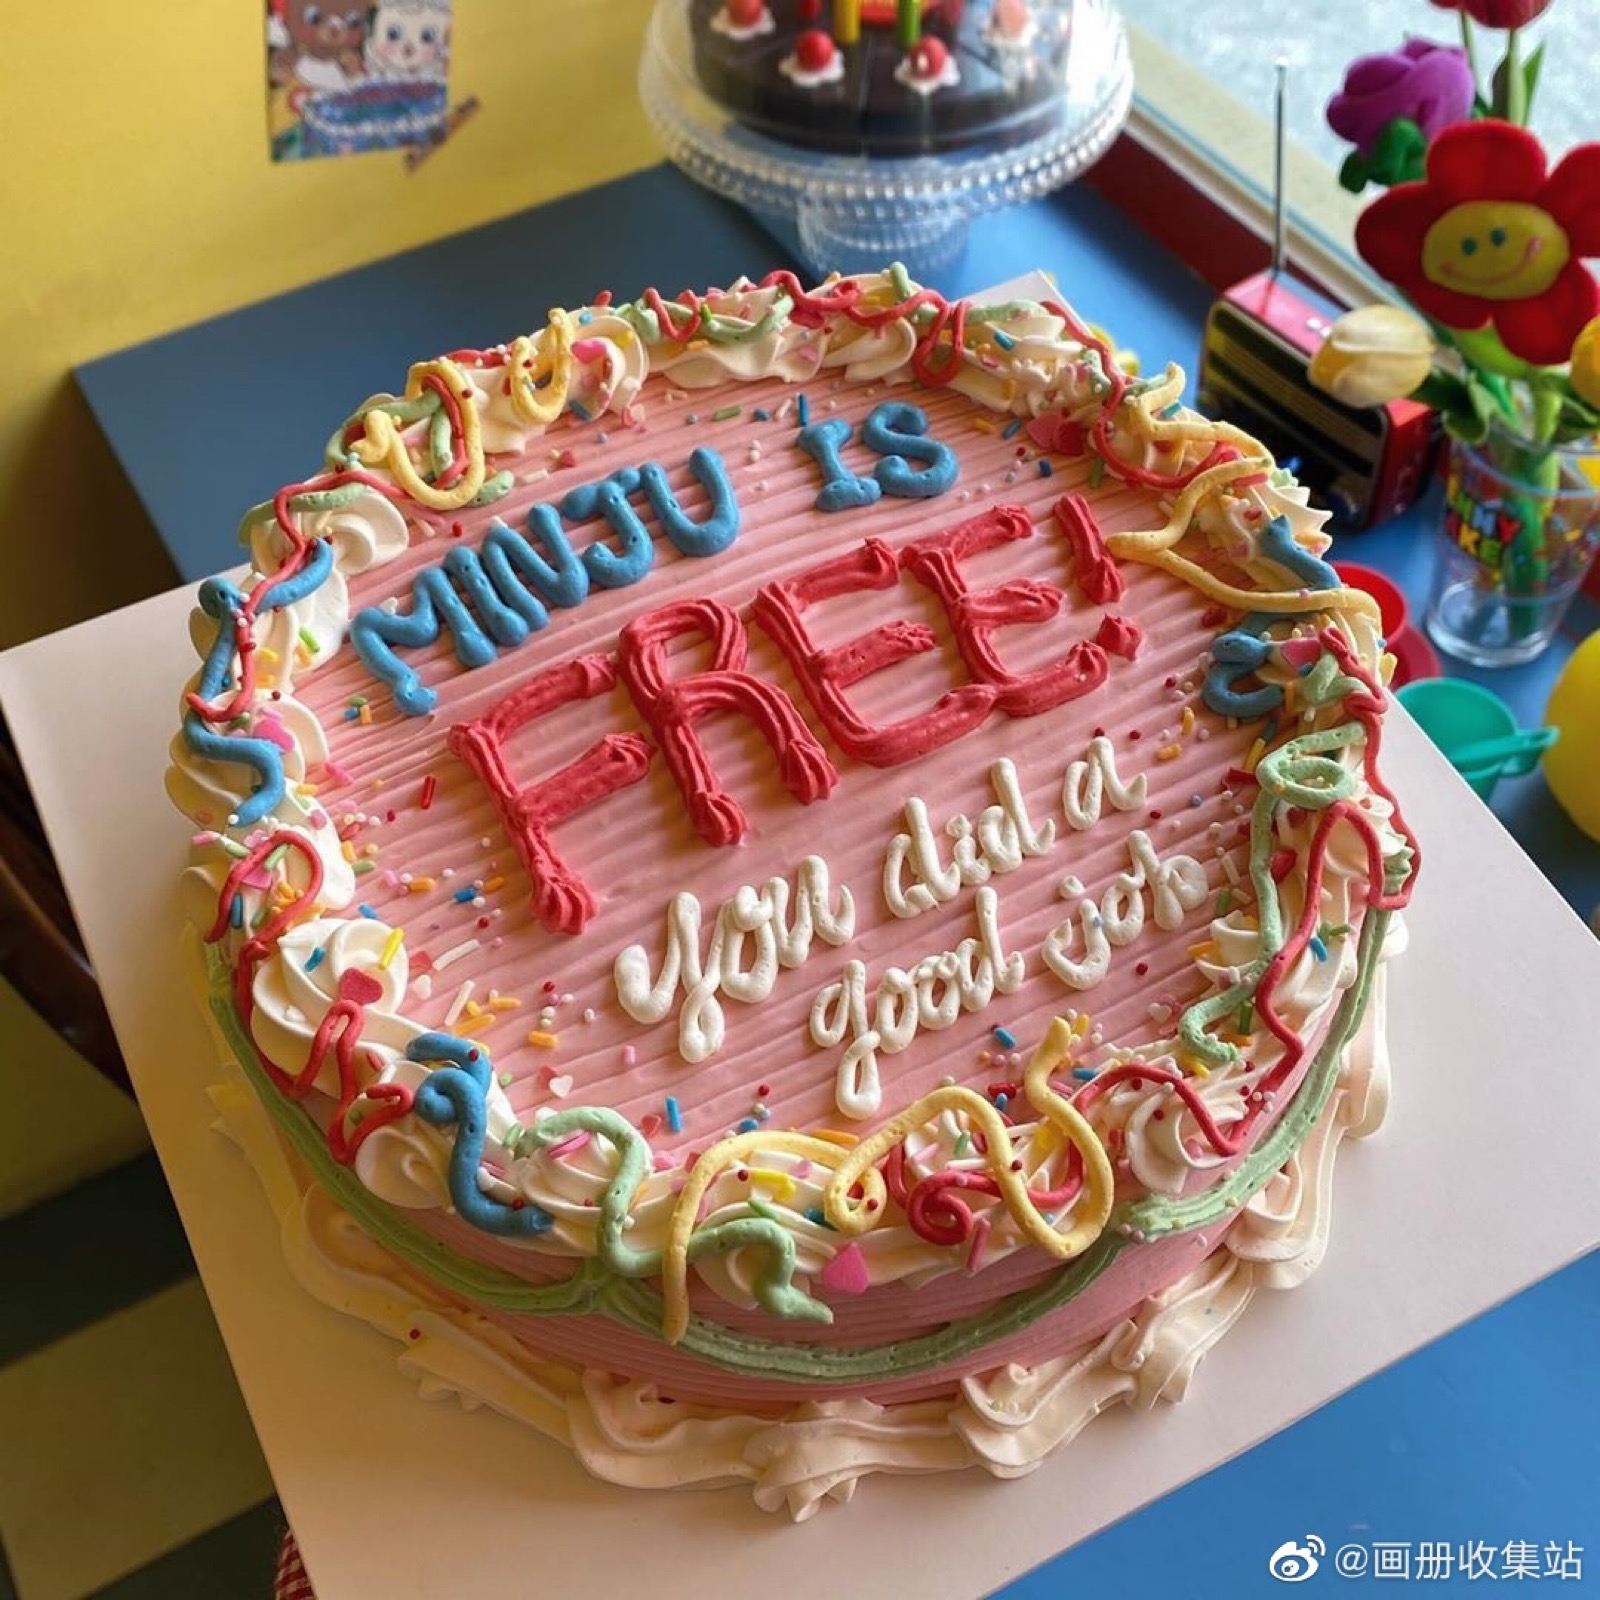 超美的生日蛋糕图片大全 欧式生日蛋糕图片大全多层